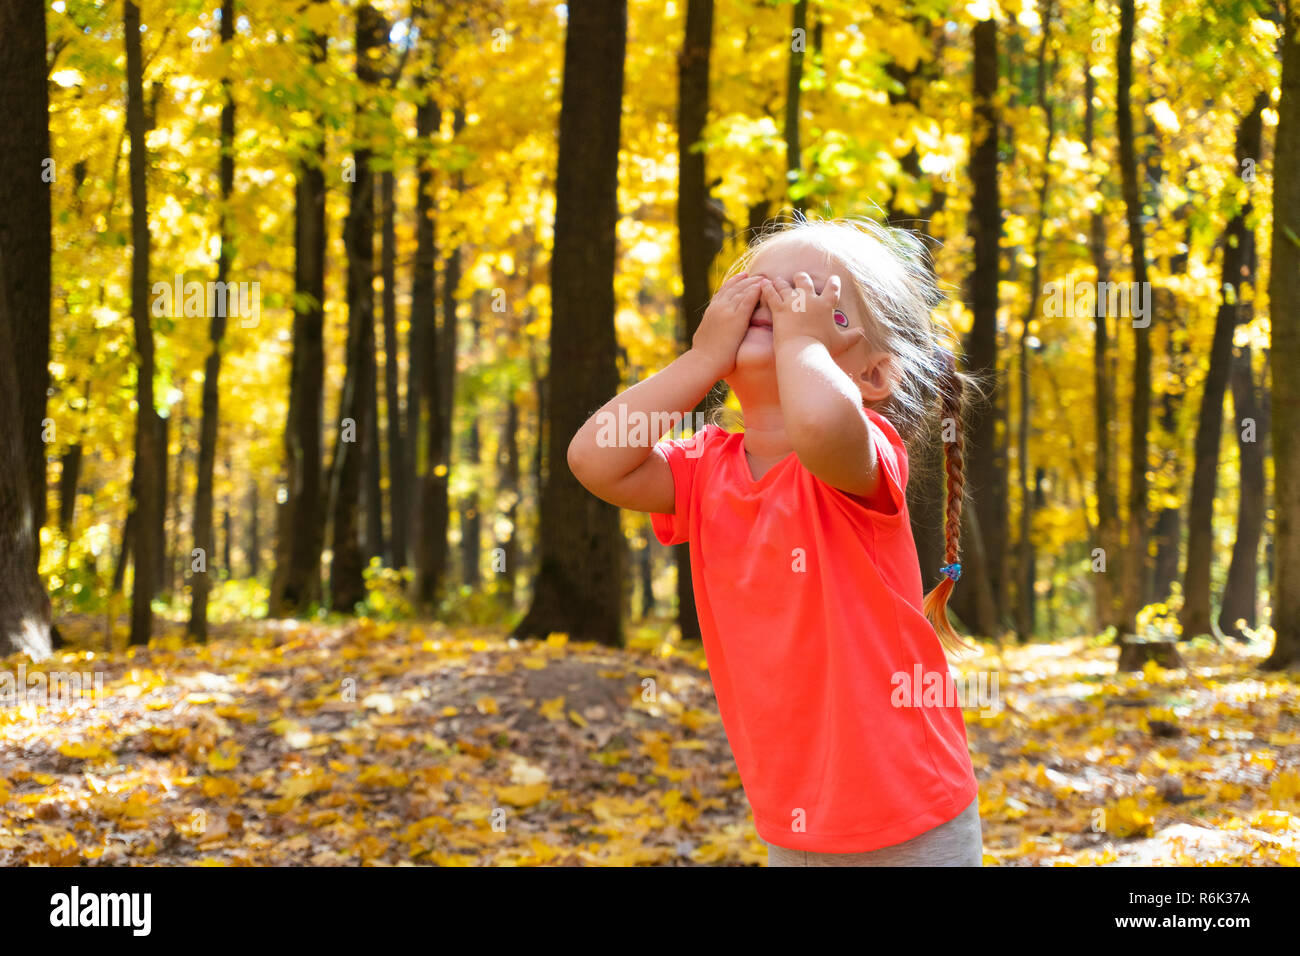 Girl joue à cache-cache dans le parc en automne Banque D'Images